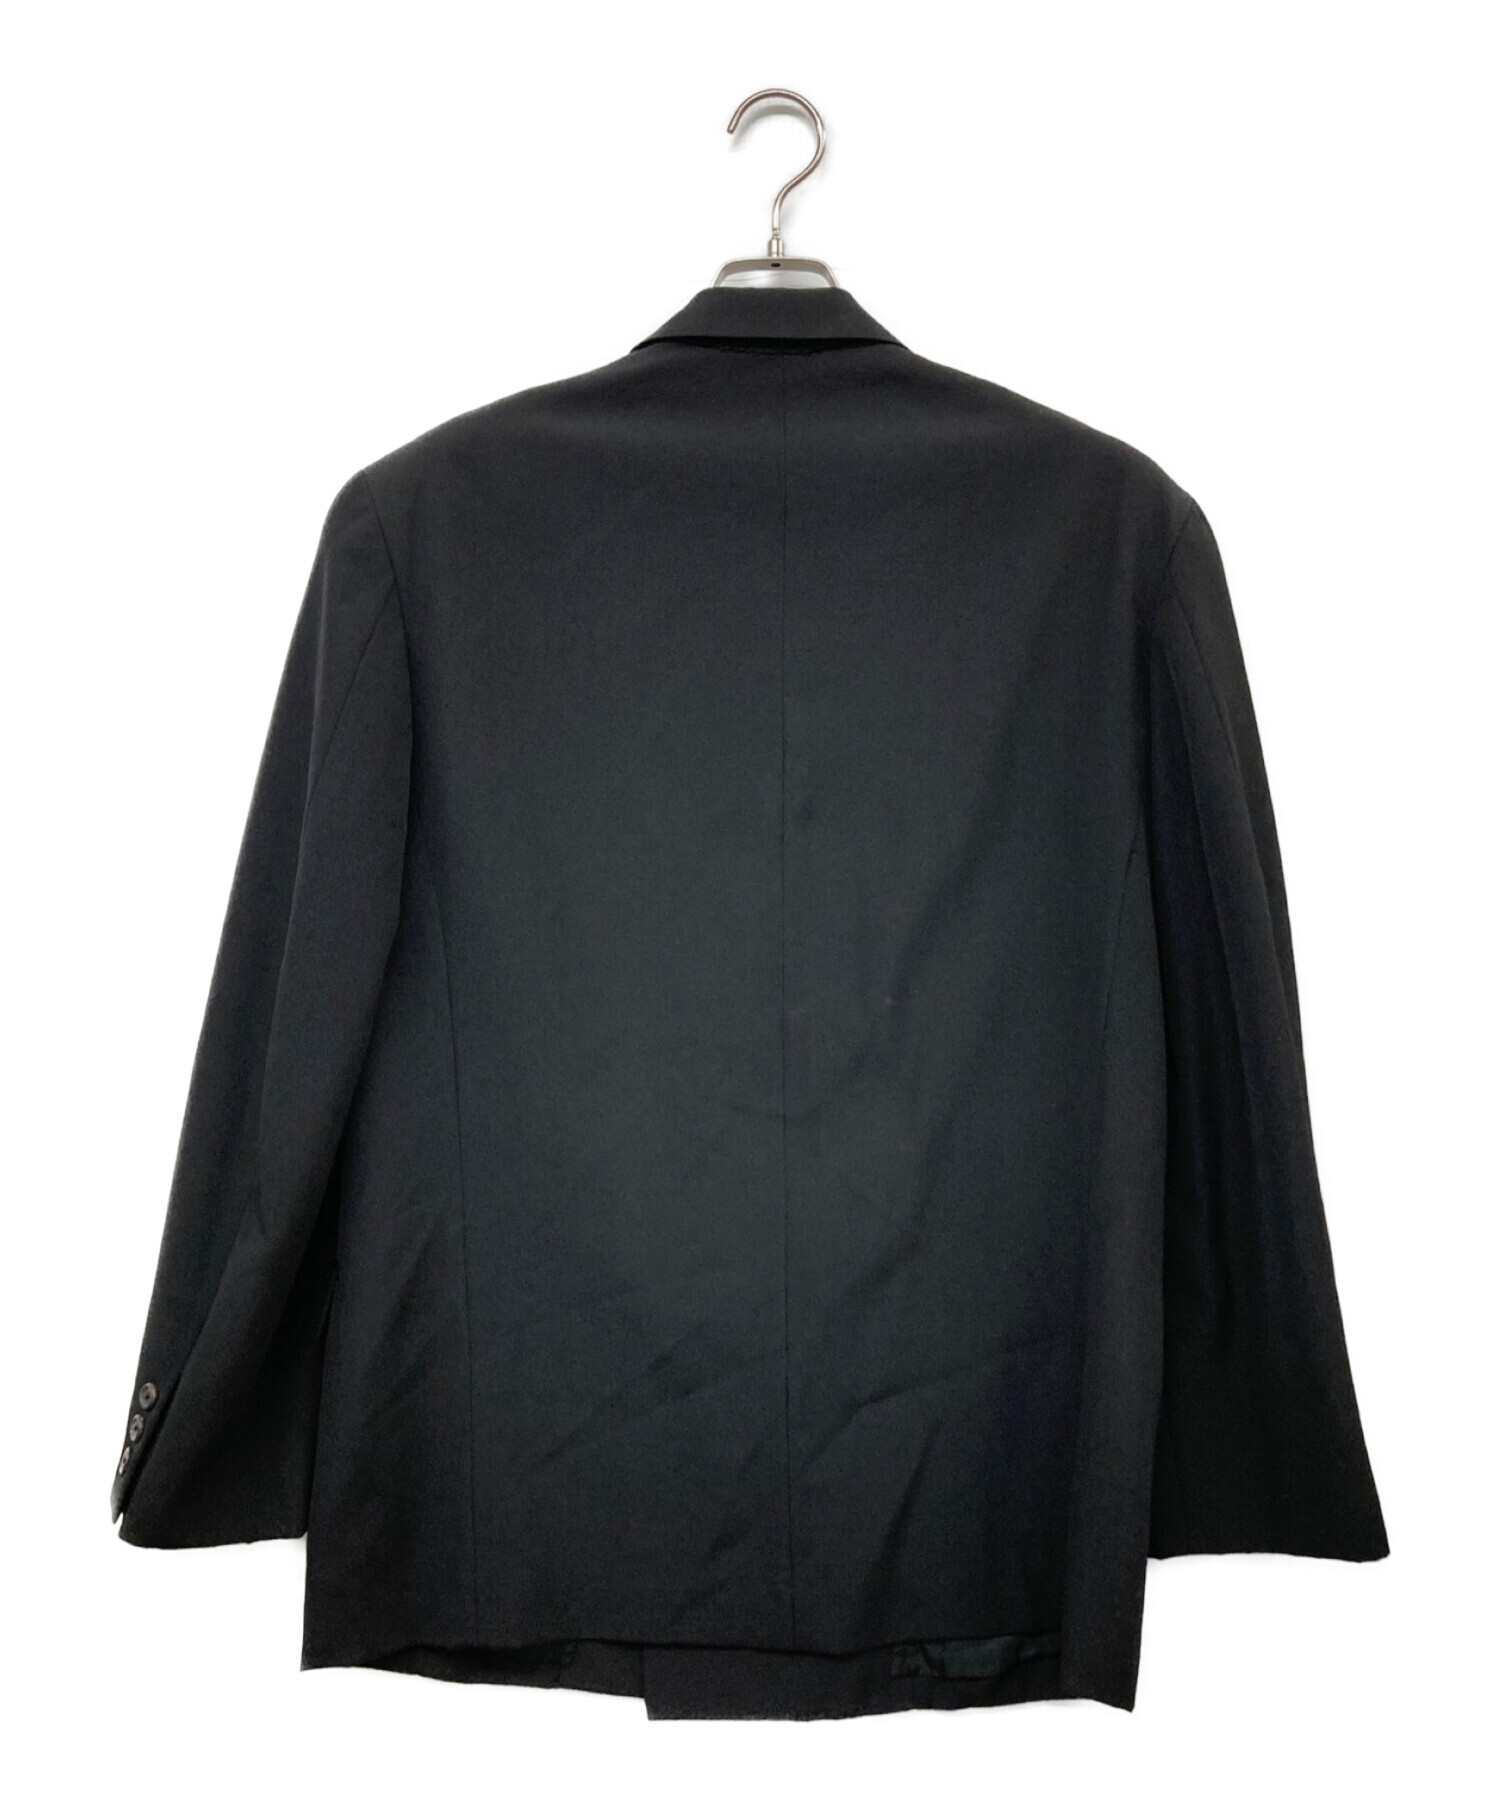 Y's for men (ワイズフォーメン) ウールギャバジンダブルブレストジャケット ブラック サイズ:S